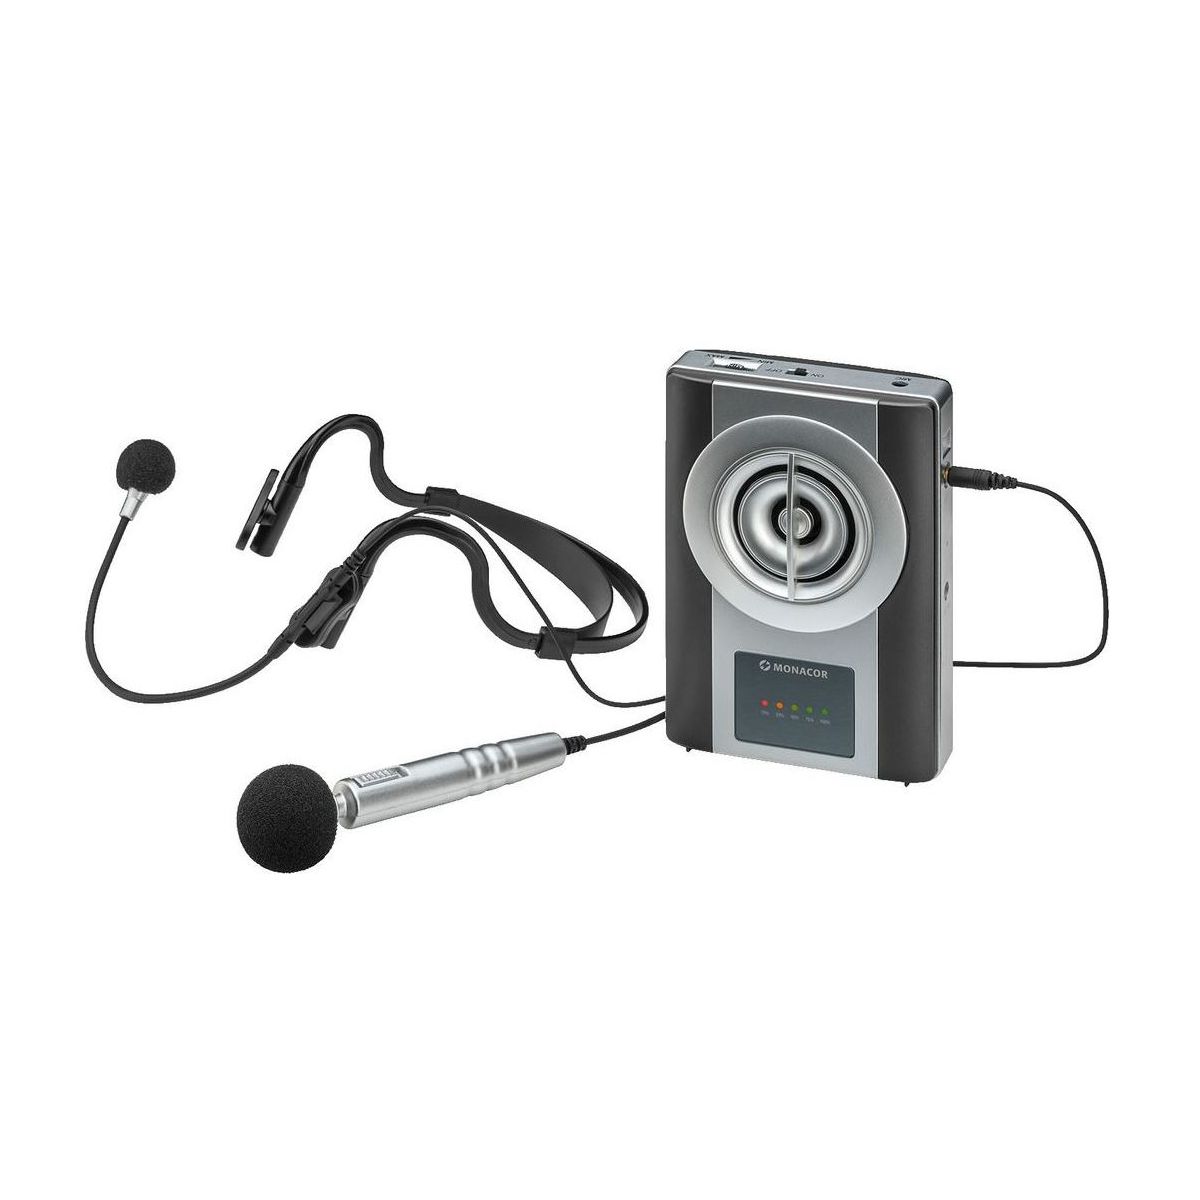 Notice d'utilisation, manuel d'utilisation et mode d'emploi Energyson Porte voix WAP-8 portable avec micro serre-tête et micro pocket   